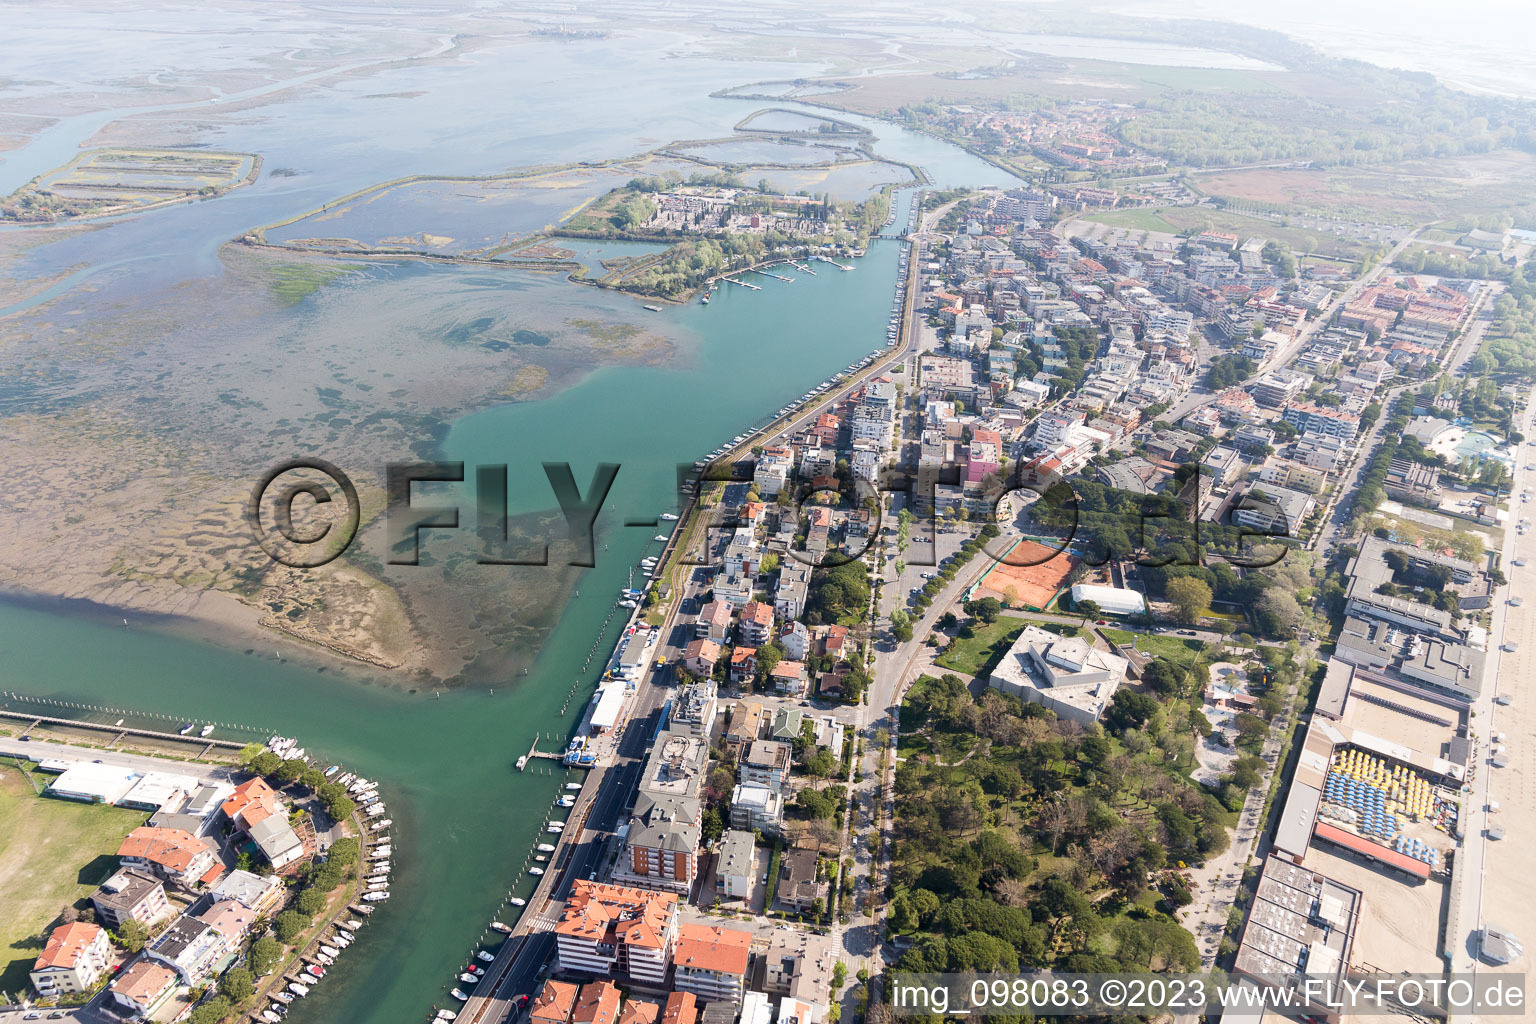 Grado im Bundesland Friaul-Julisch Venetien, Italien von der Drohne aus gesehen